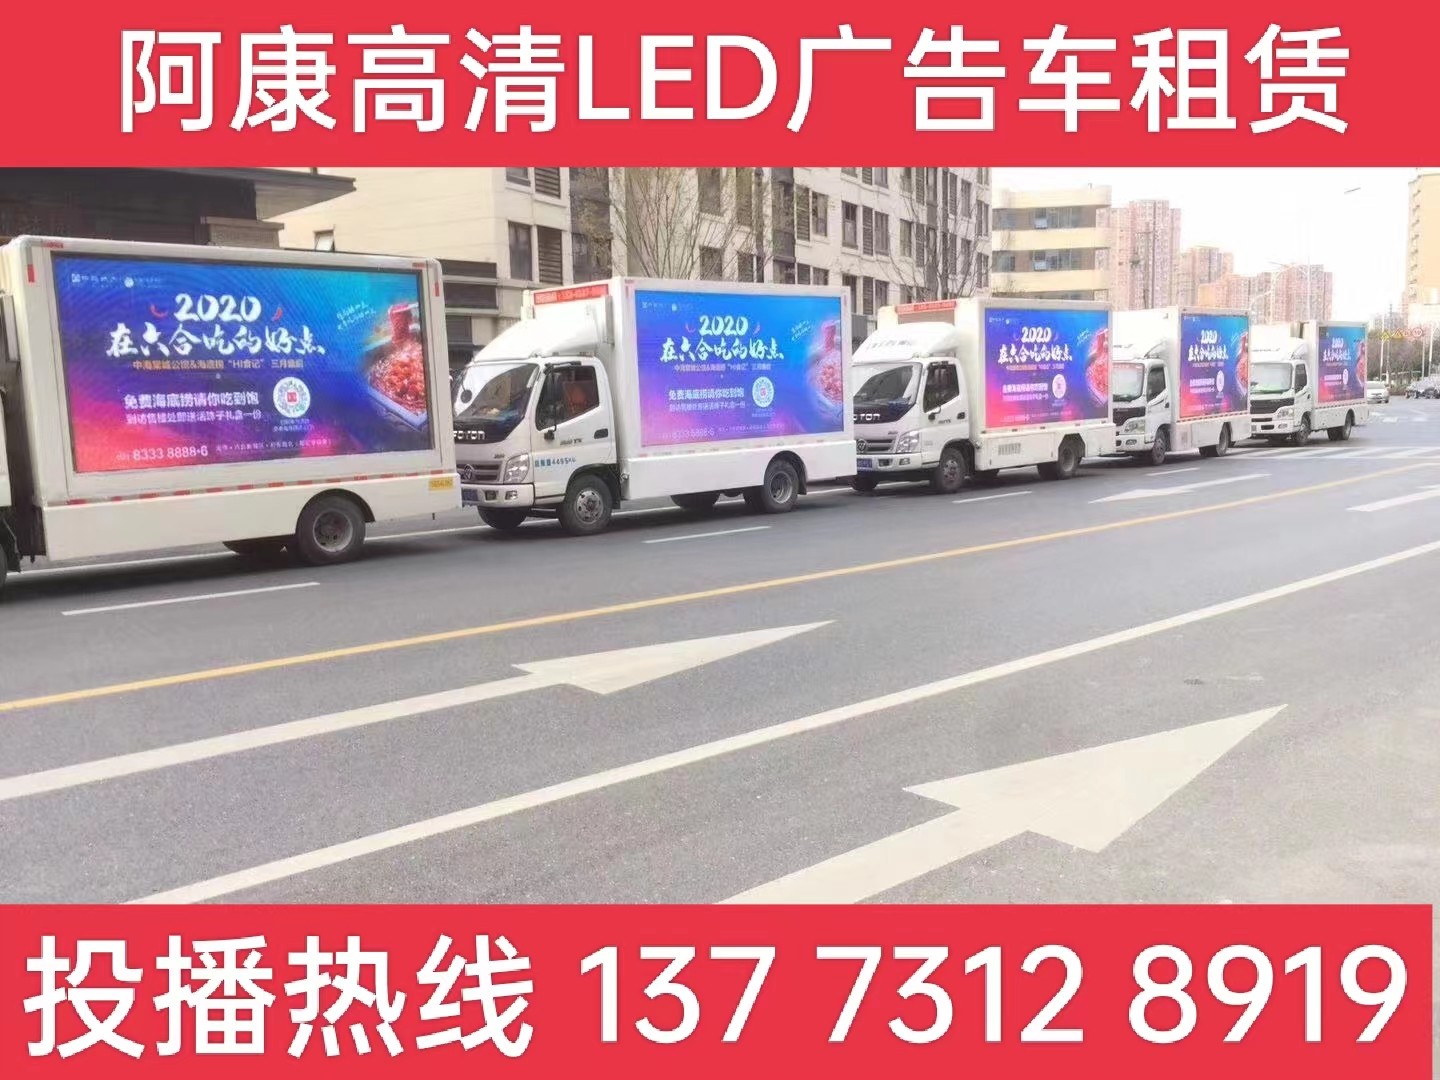 吴江宣传车出租-海底捞LED广告